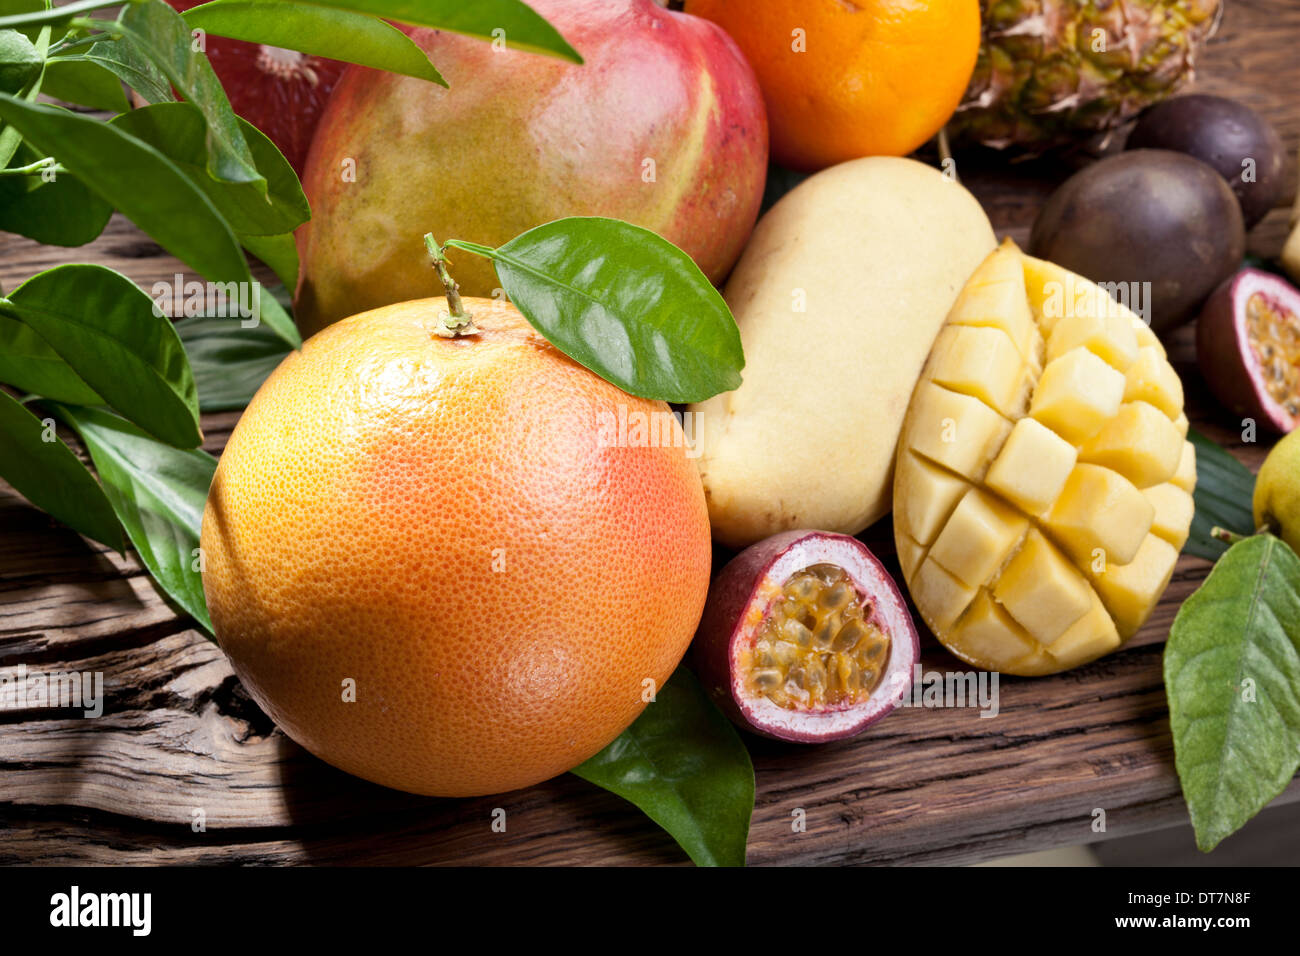 Fruits exotiques sur une table en bois avec feuillage vert sur l'arrière-plan. Banque D'Images